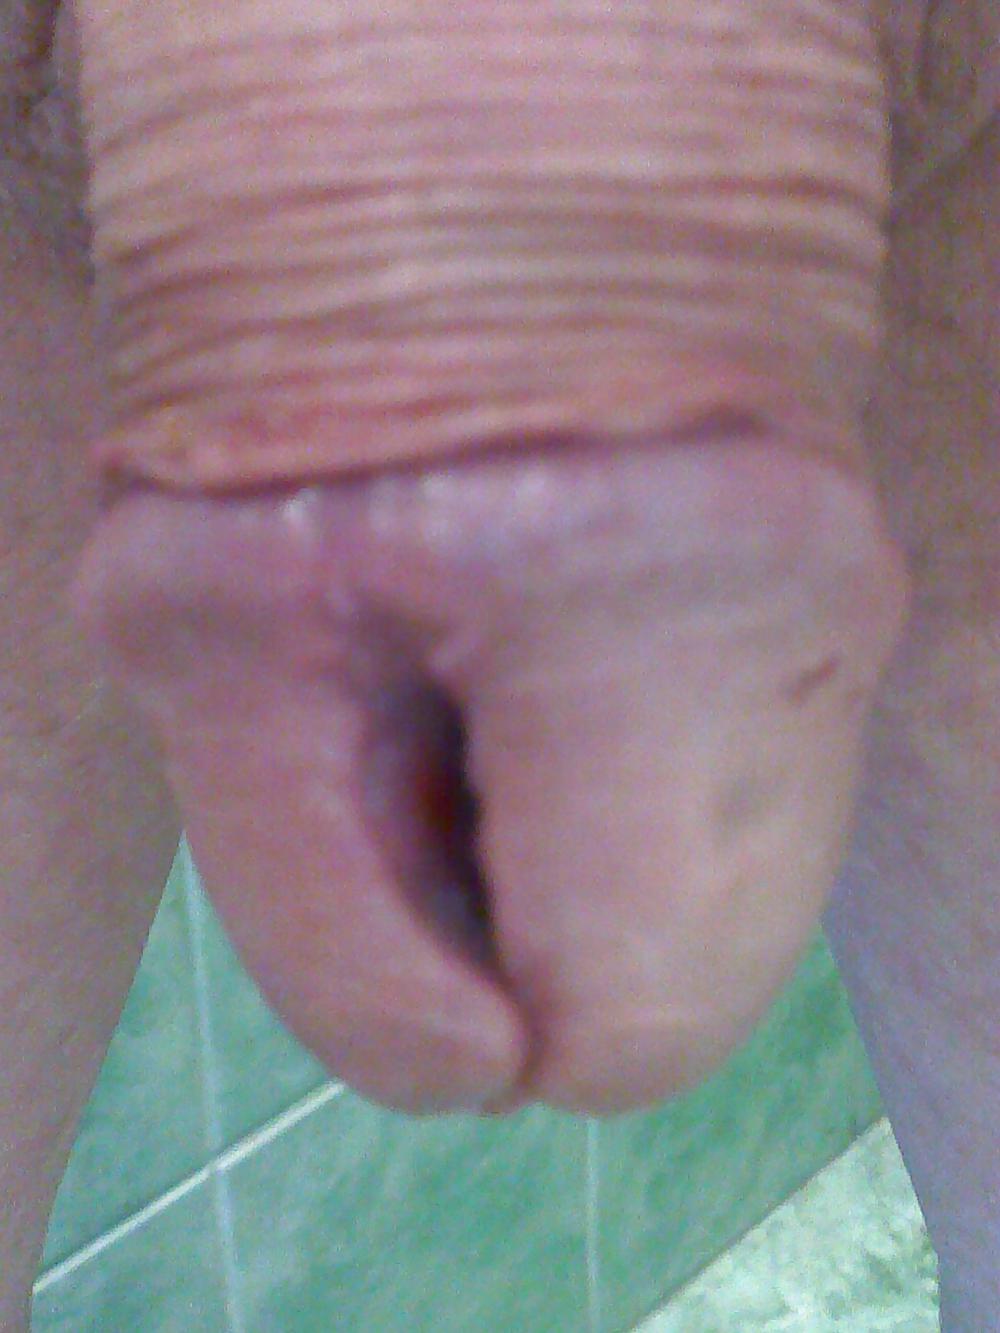 Penis Piercing Head Splitting M